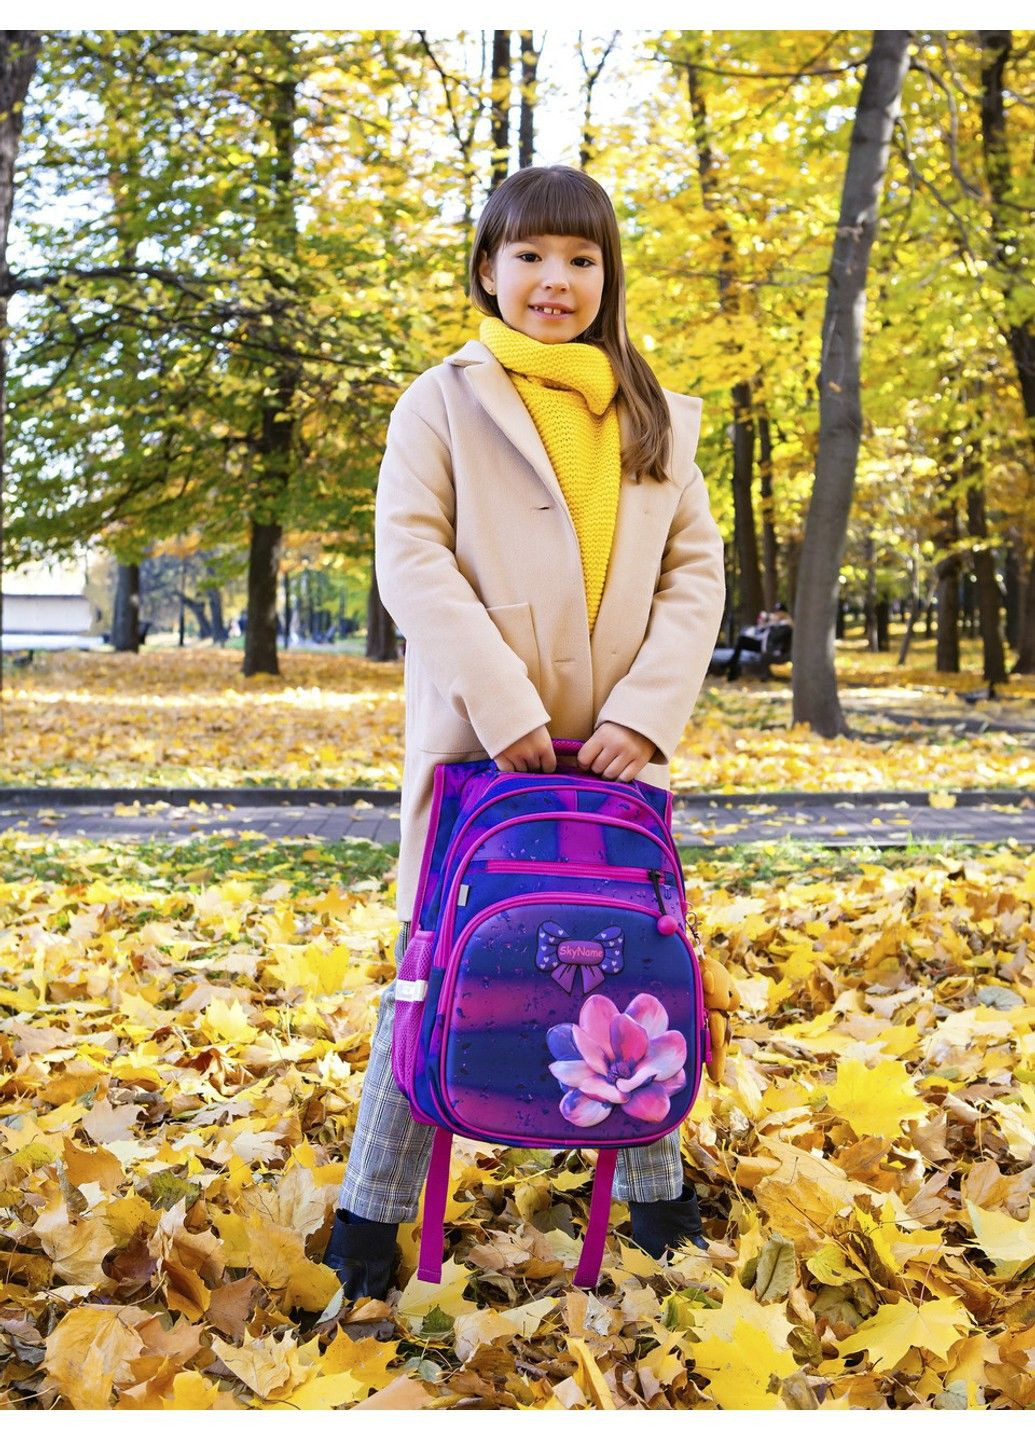 Набір шкільний для дівчинки рюкзак /SkyName R3-243 + мішок для взуття (фірмовий пенал у подарунок) Winner (291682944)